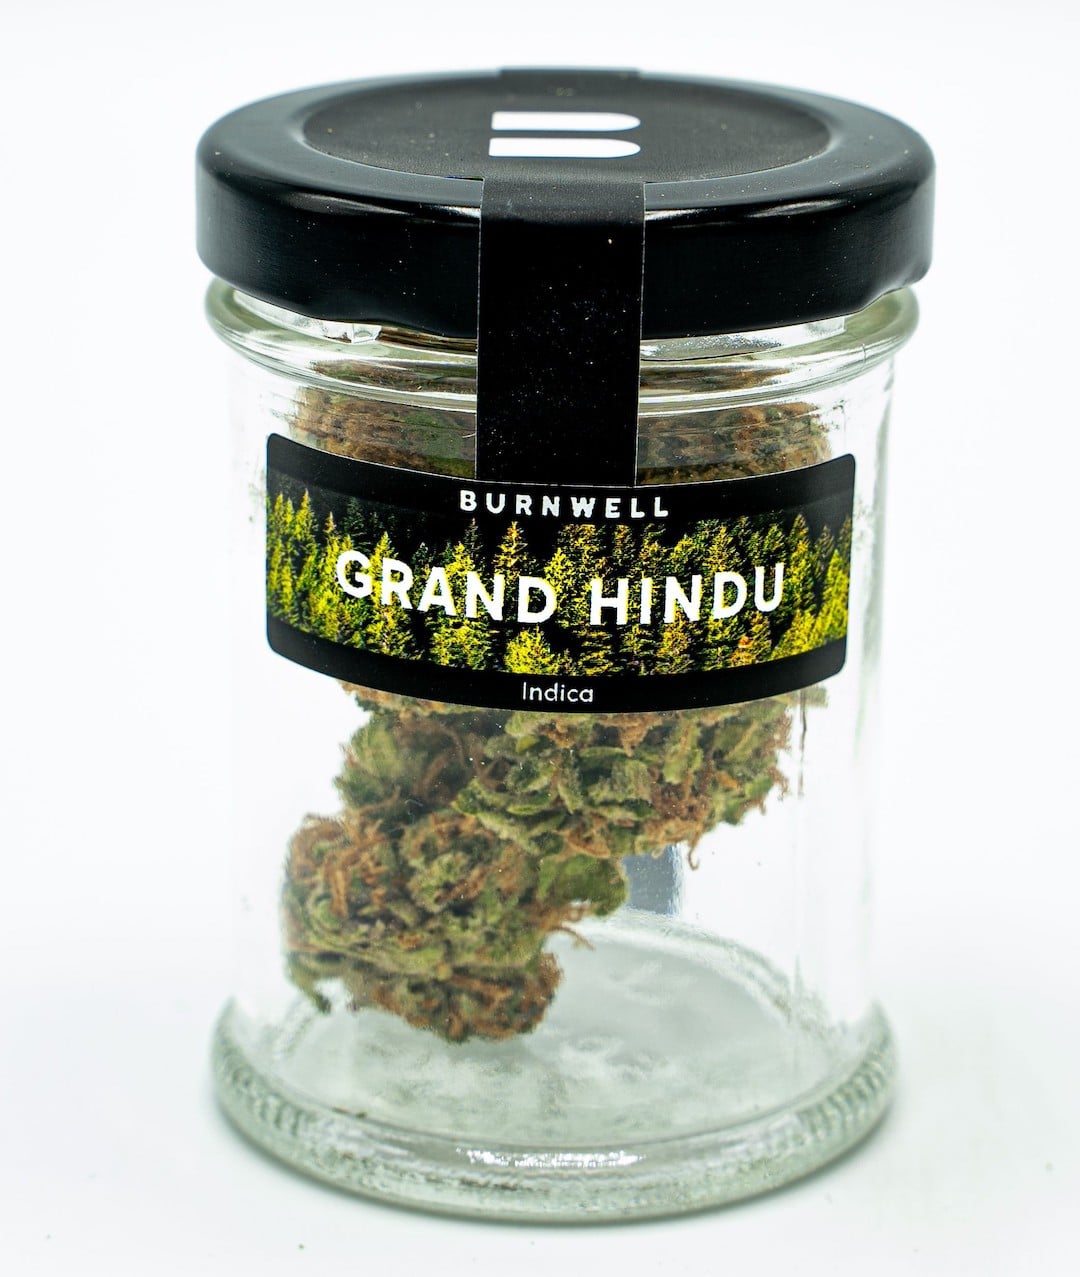 Grand Hindu Cannabis Strain from Burnwell